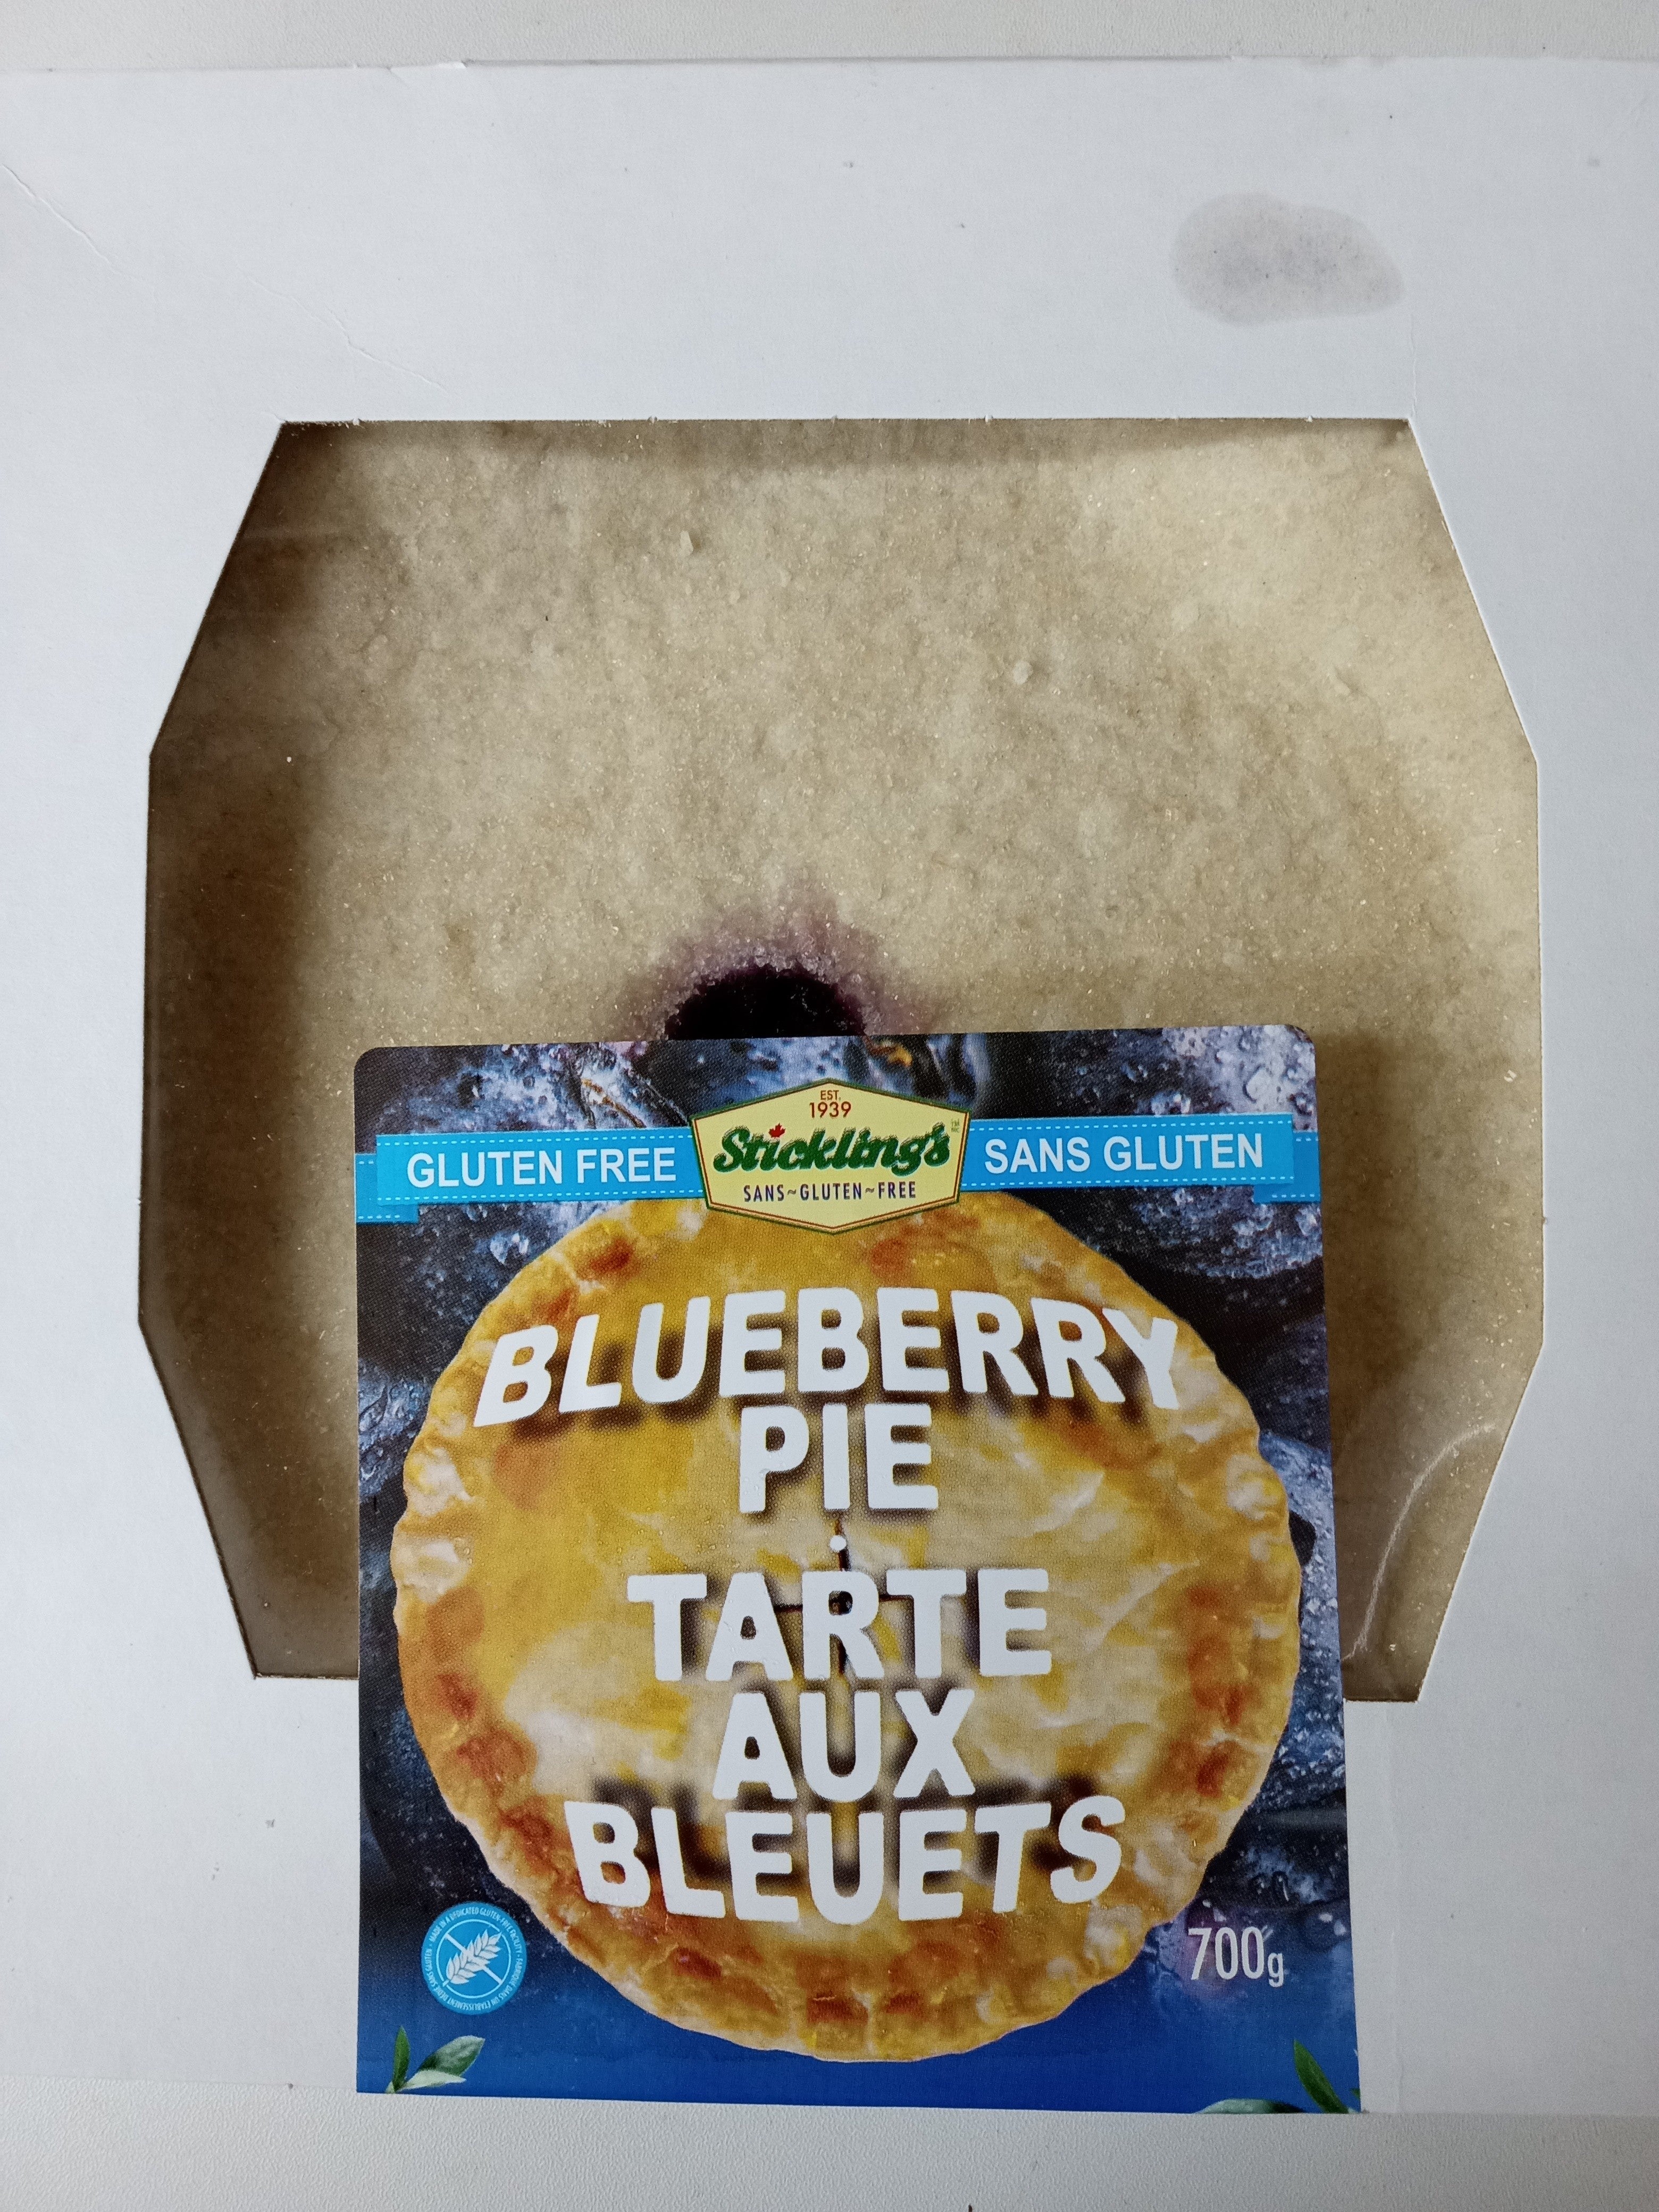 Stickling's Gluten Free Blueberry Pie - Frozen